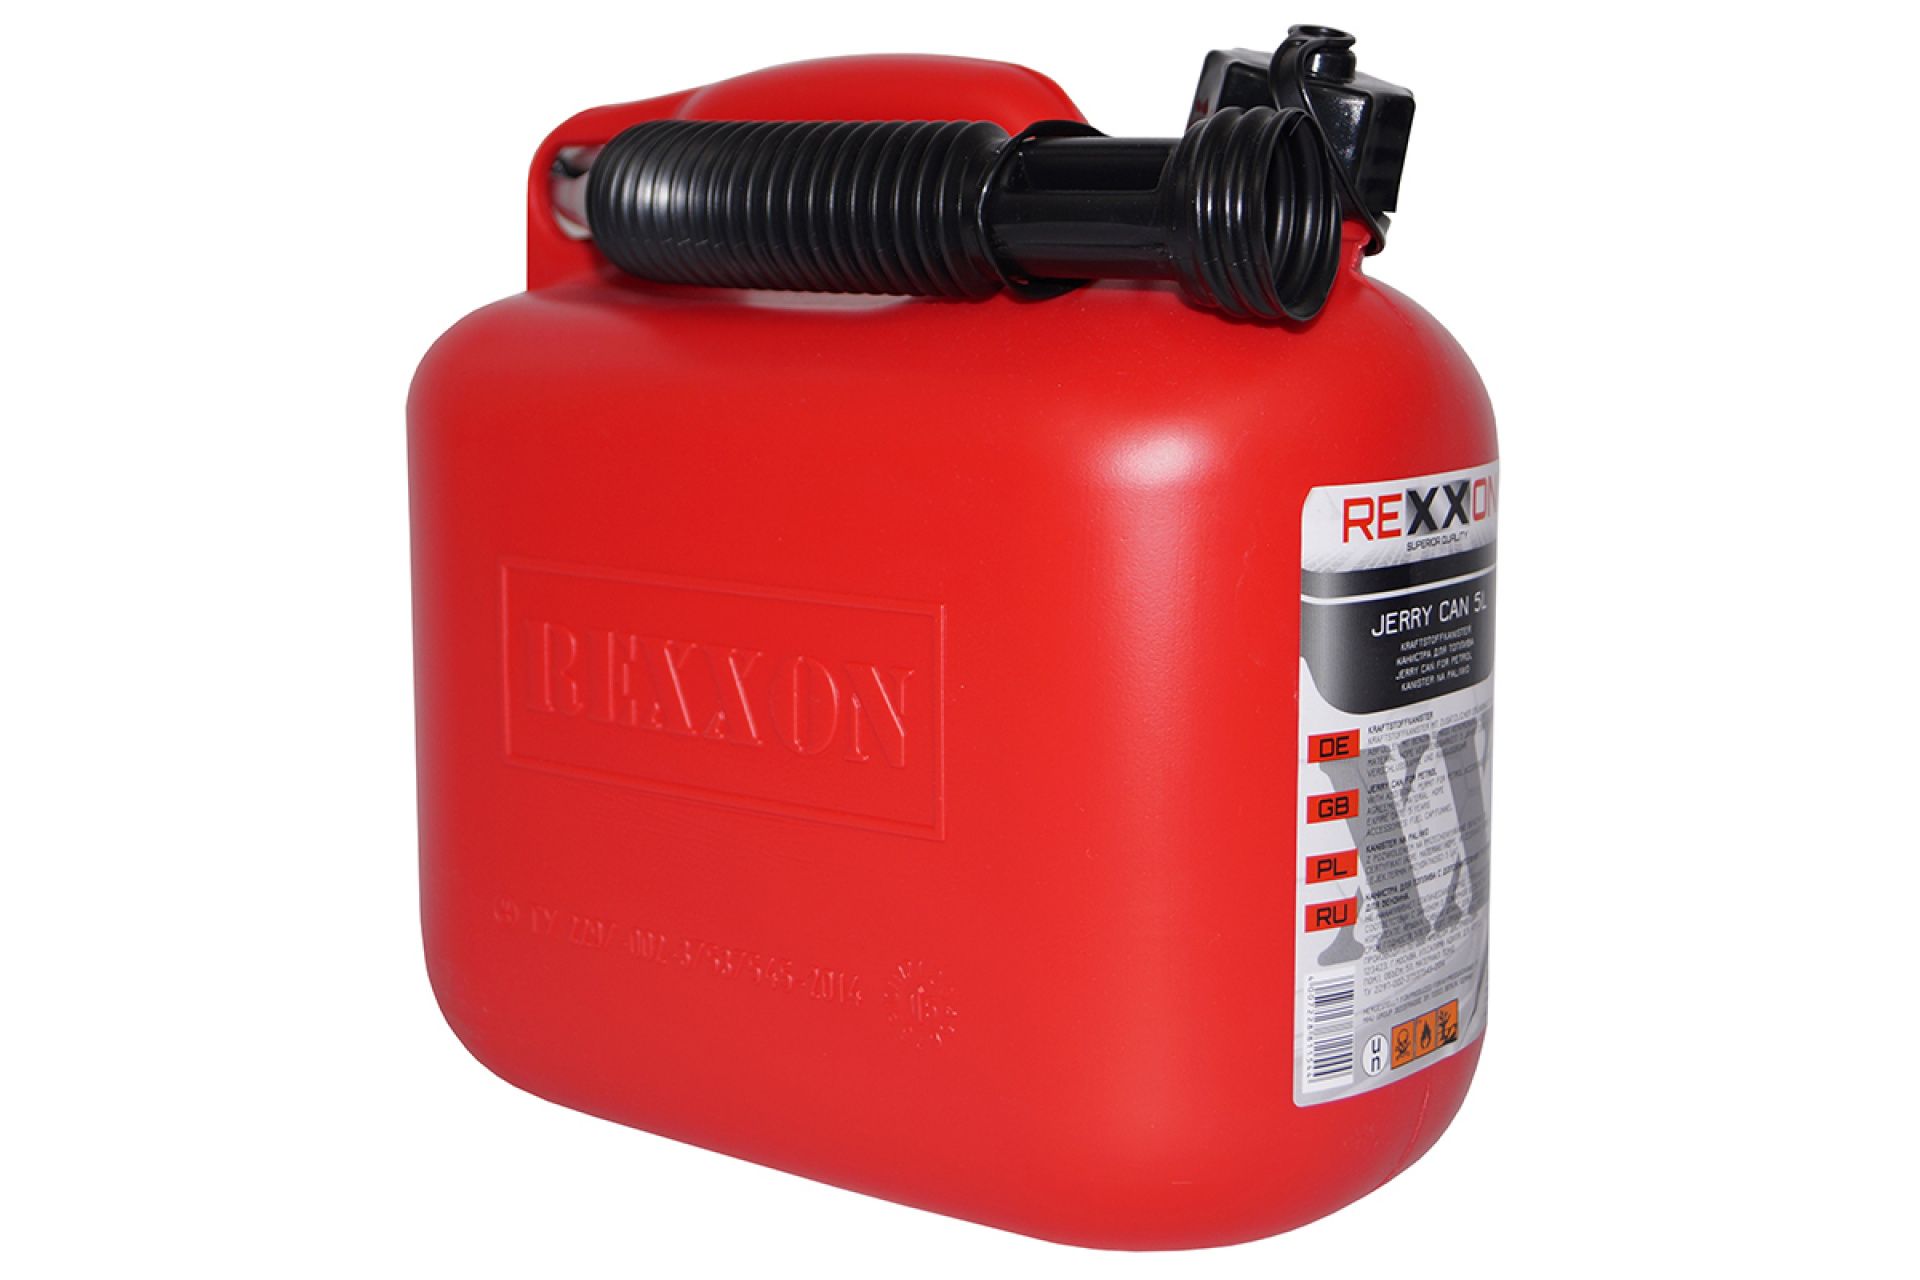 Канистра стандарт REXXON для бензина, 5л, цвет красный